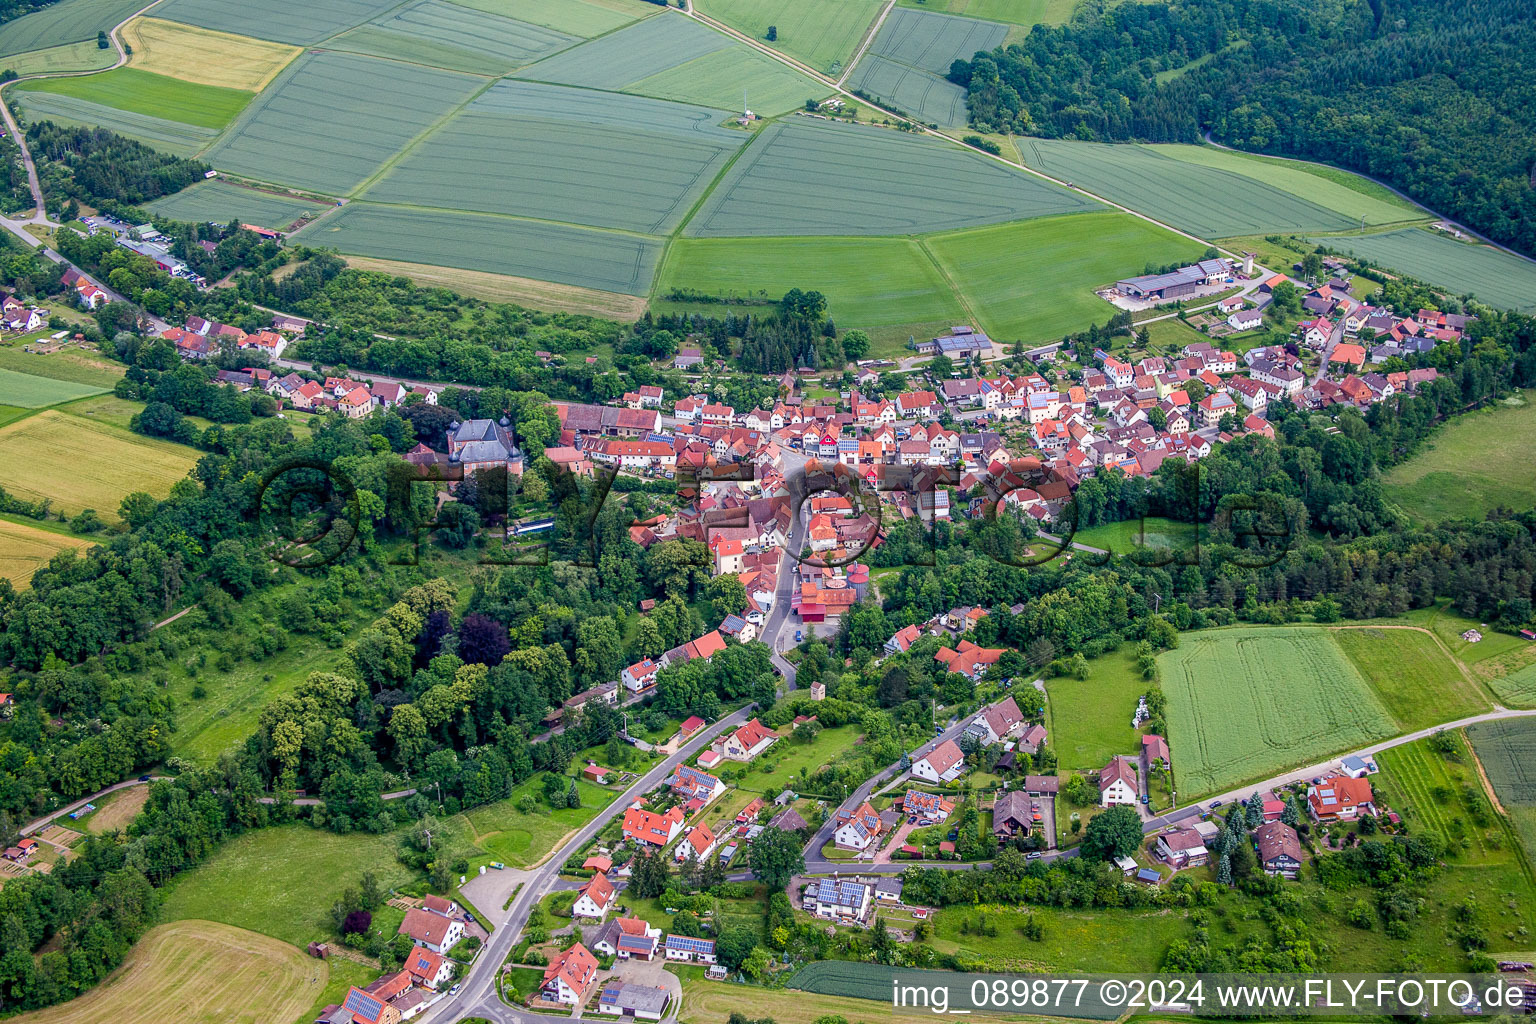 Vue aérienne de Champs agricoles et surfaces utilisables à Waltershausen dans le département Bavière, Allemagne